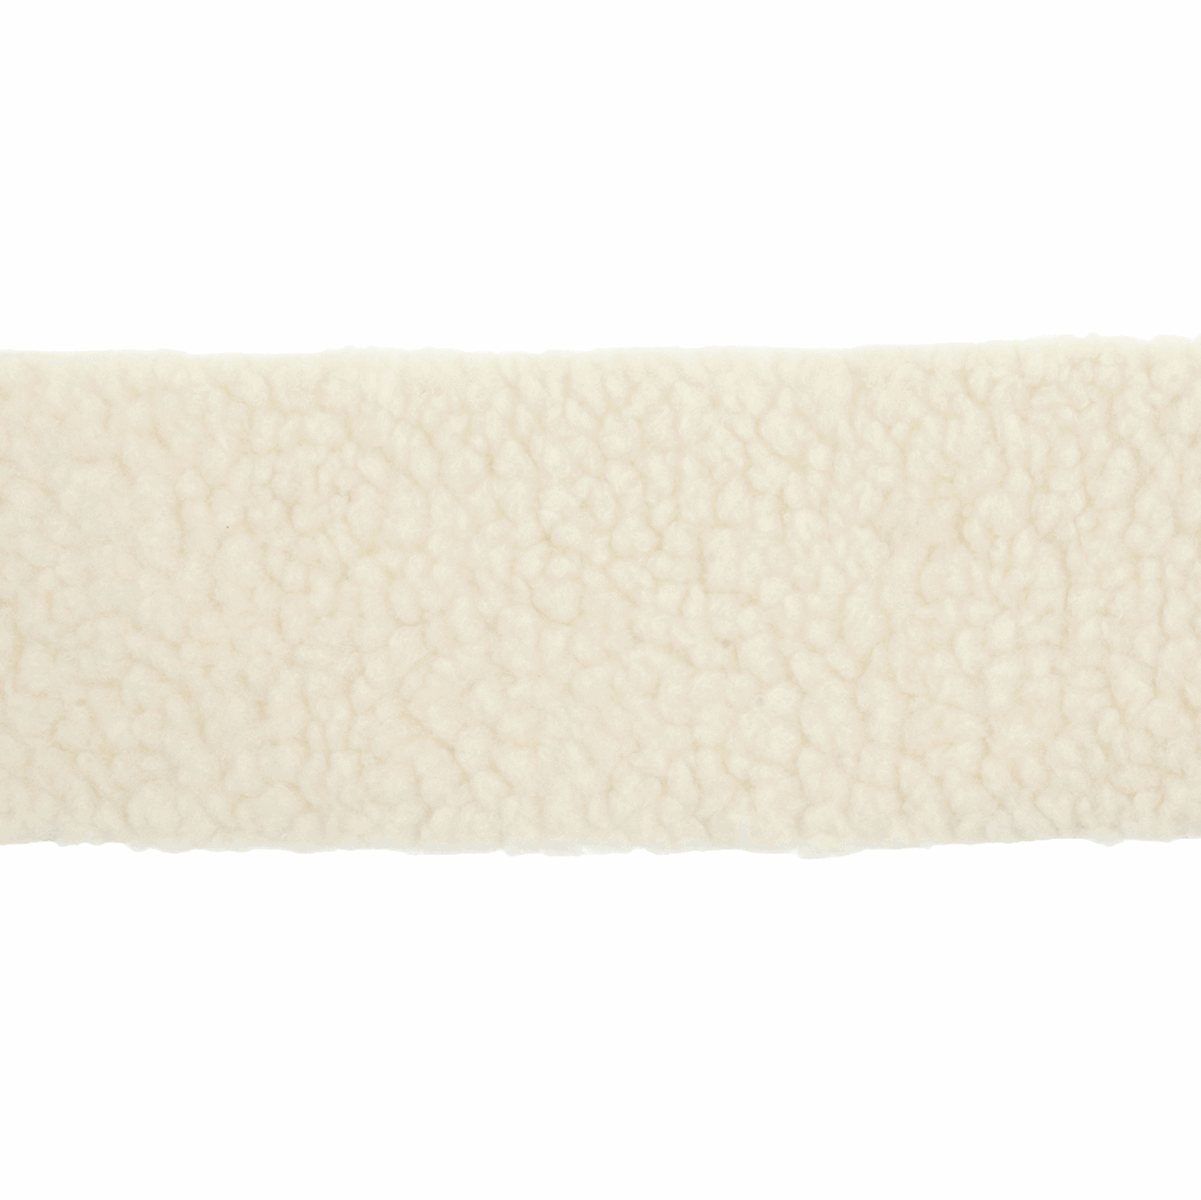 Trimits Luxury Faux Sheepskin Roll - 2m x 80mm